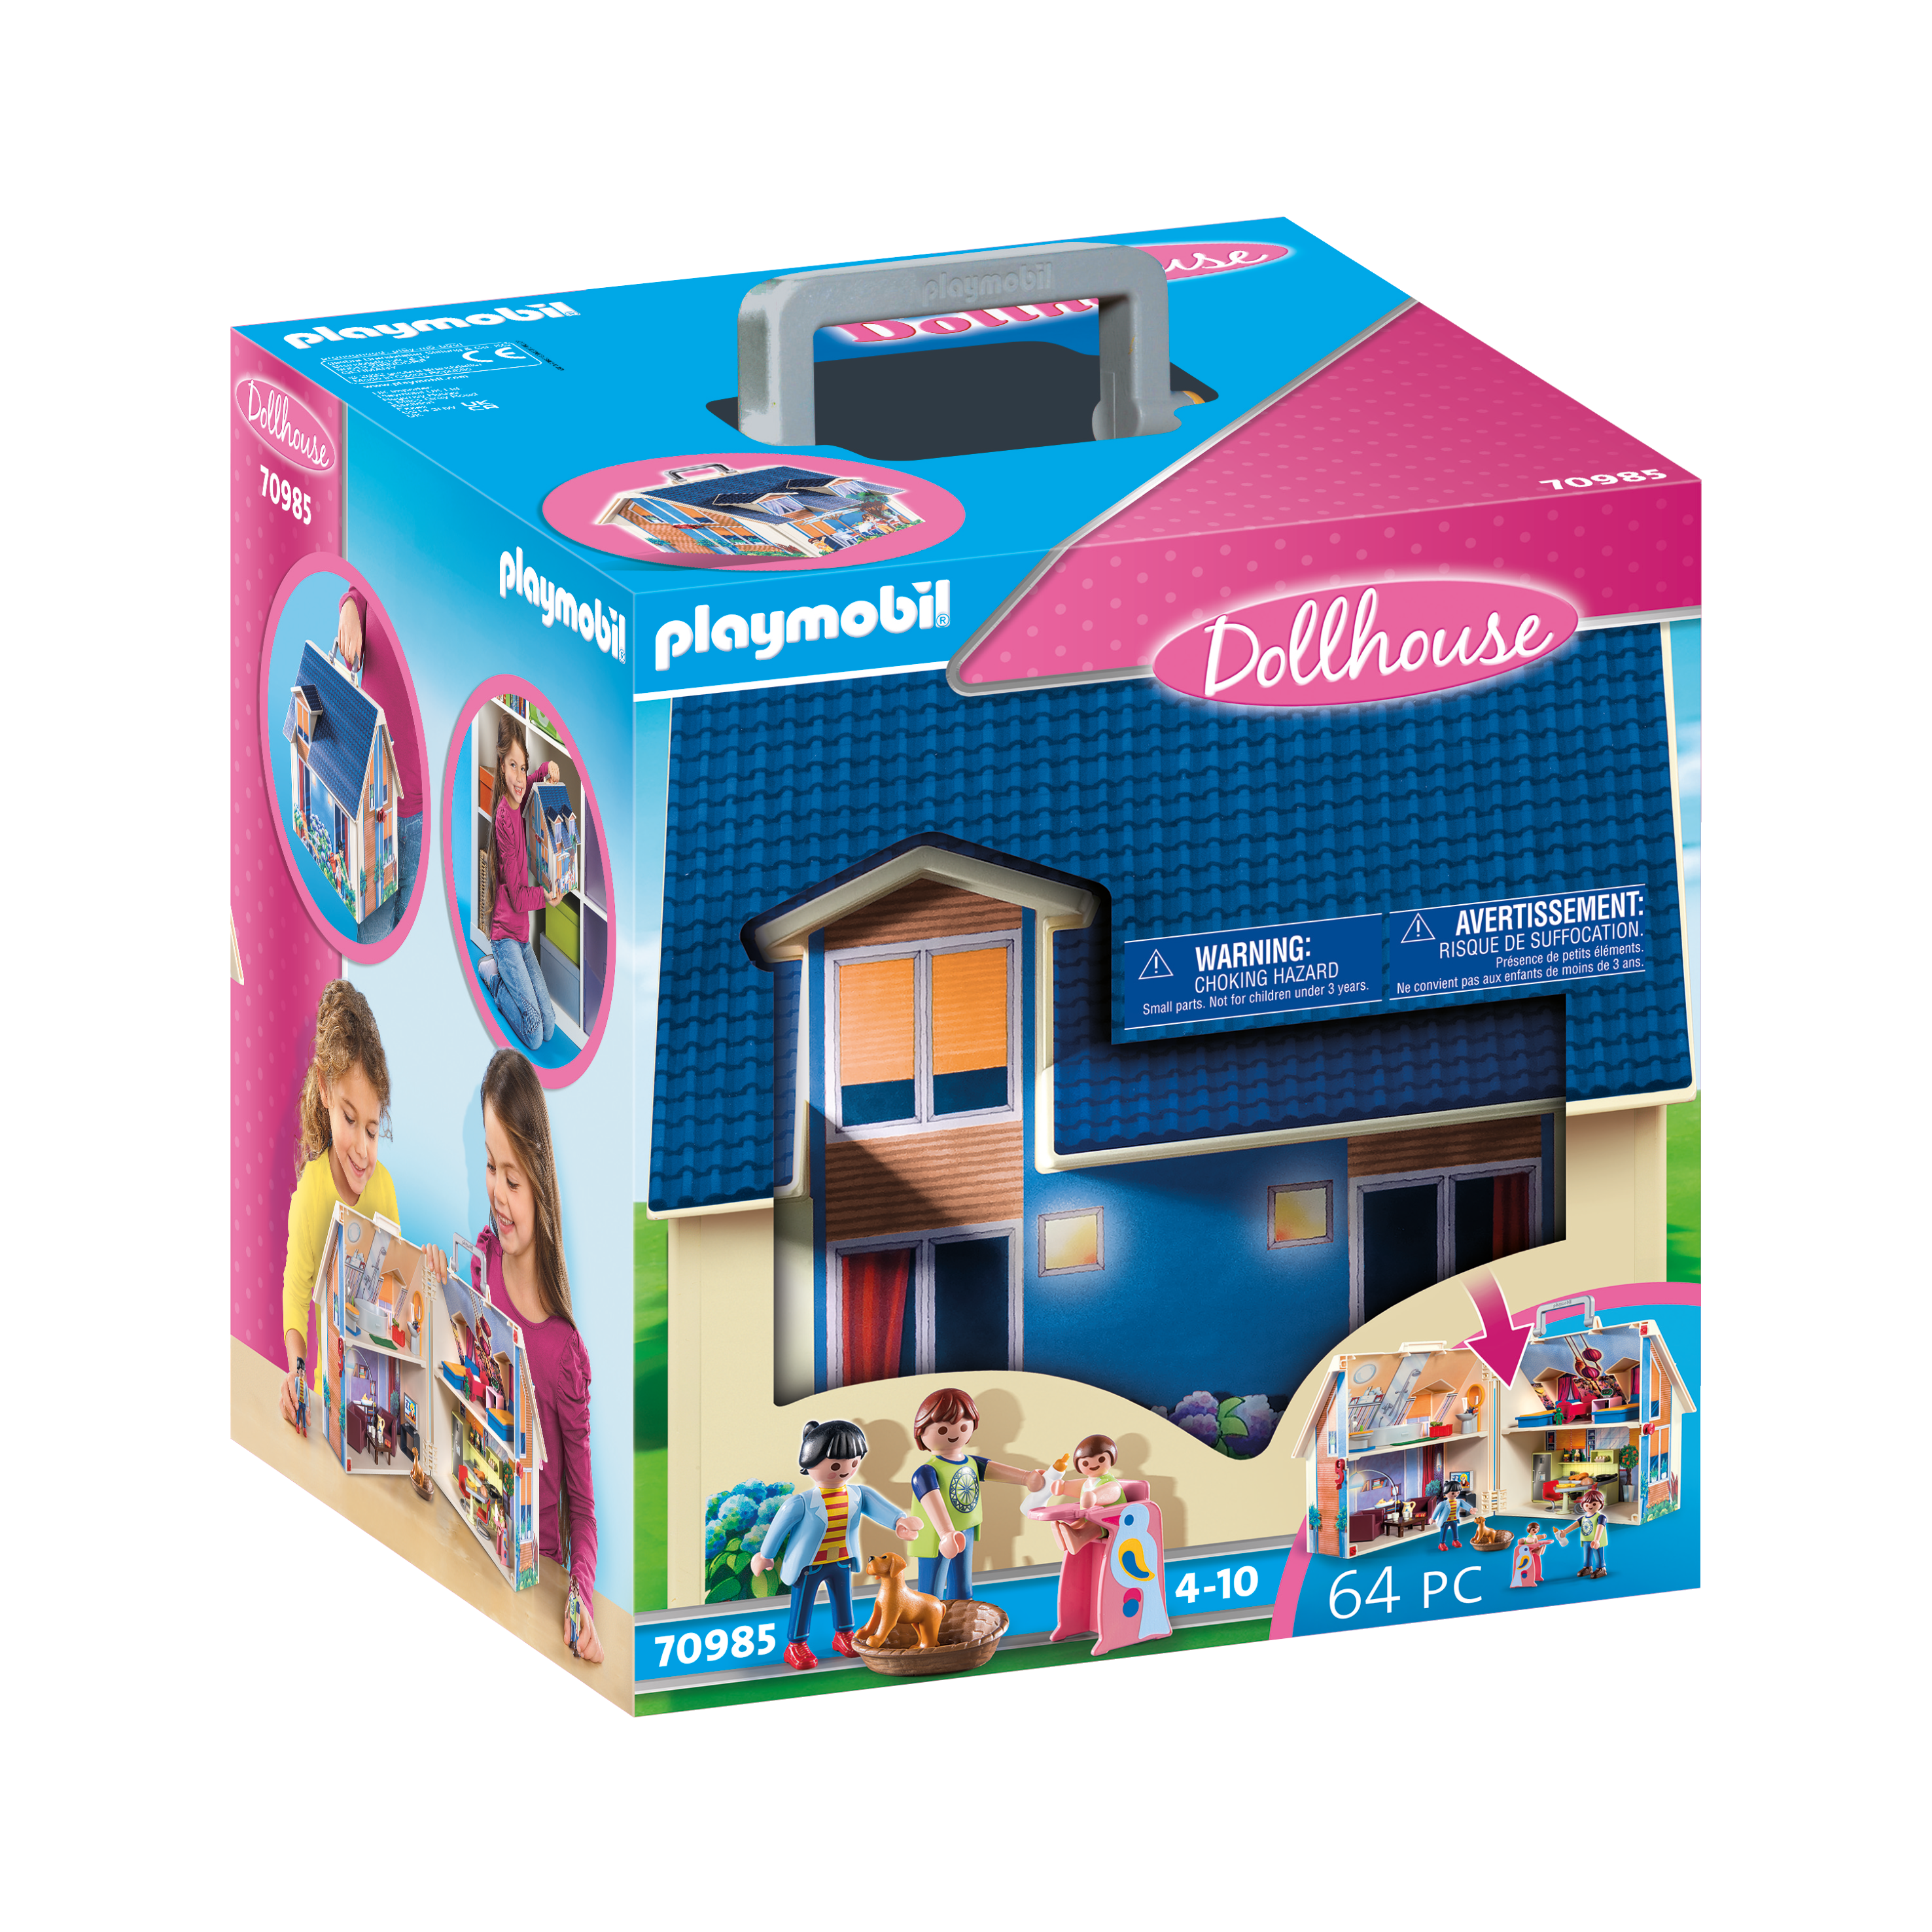 Take along dollhouse - Playmobil